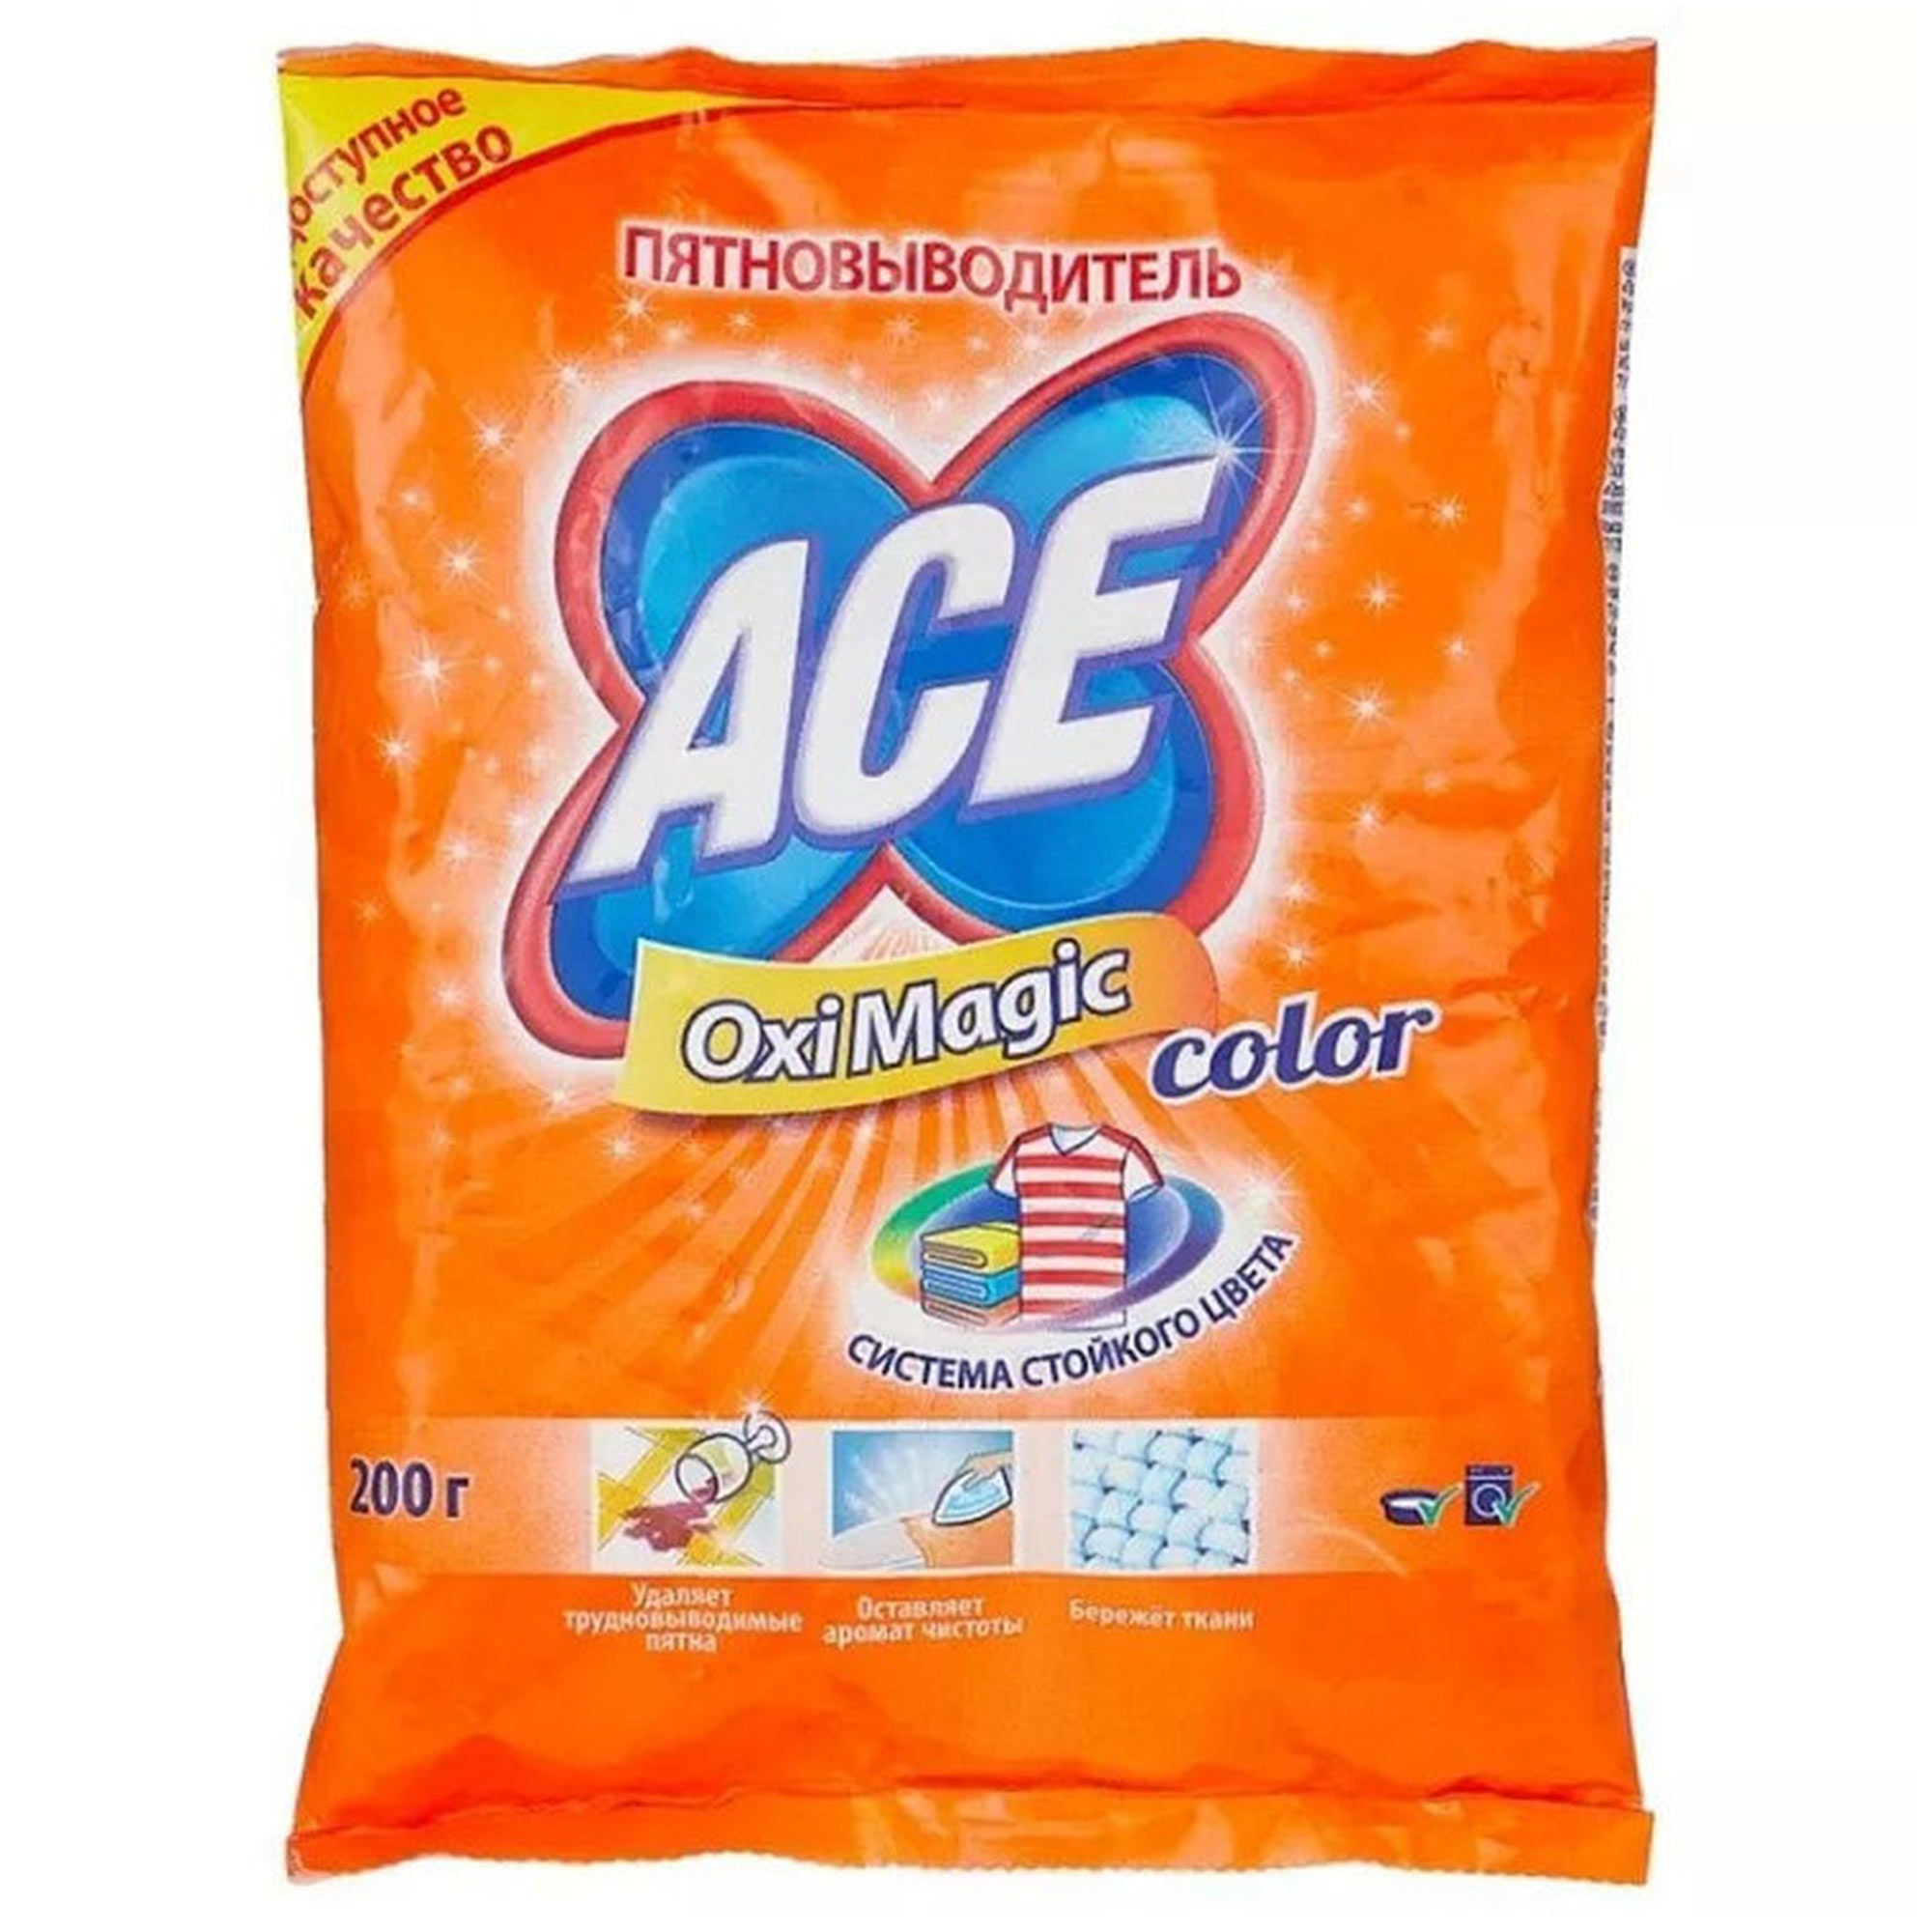 Пятновыводитель  Ace Oxi Magic Color 200 г